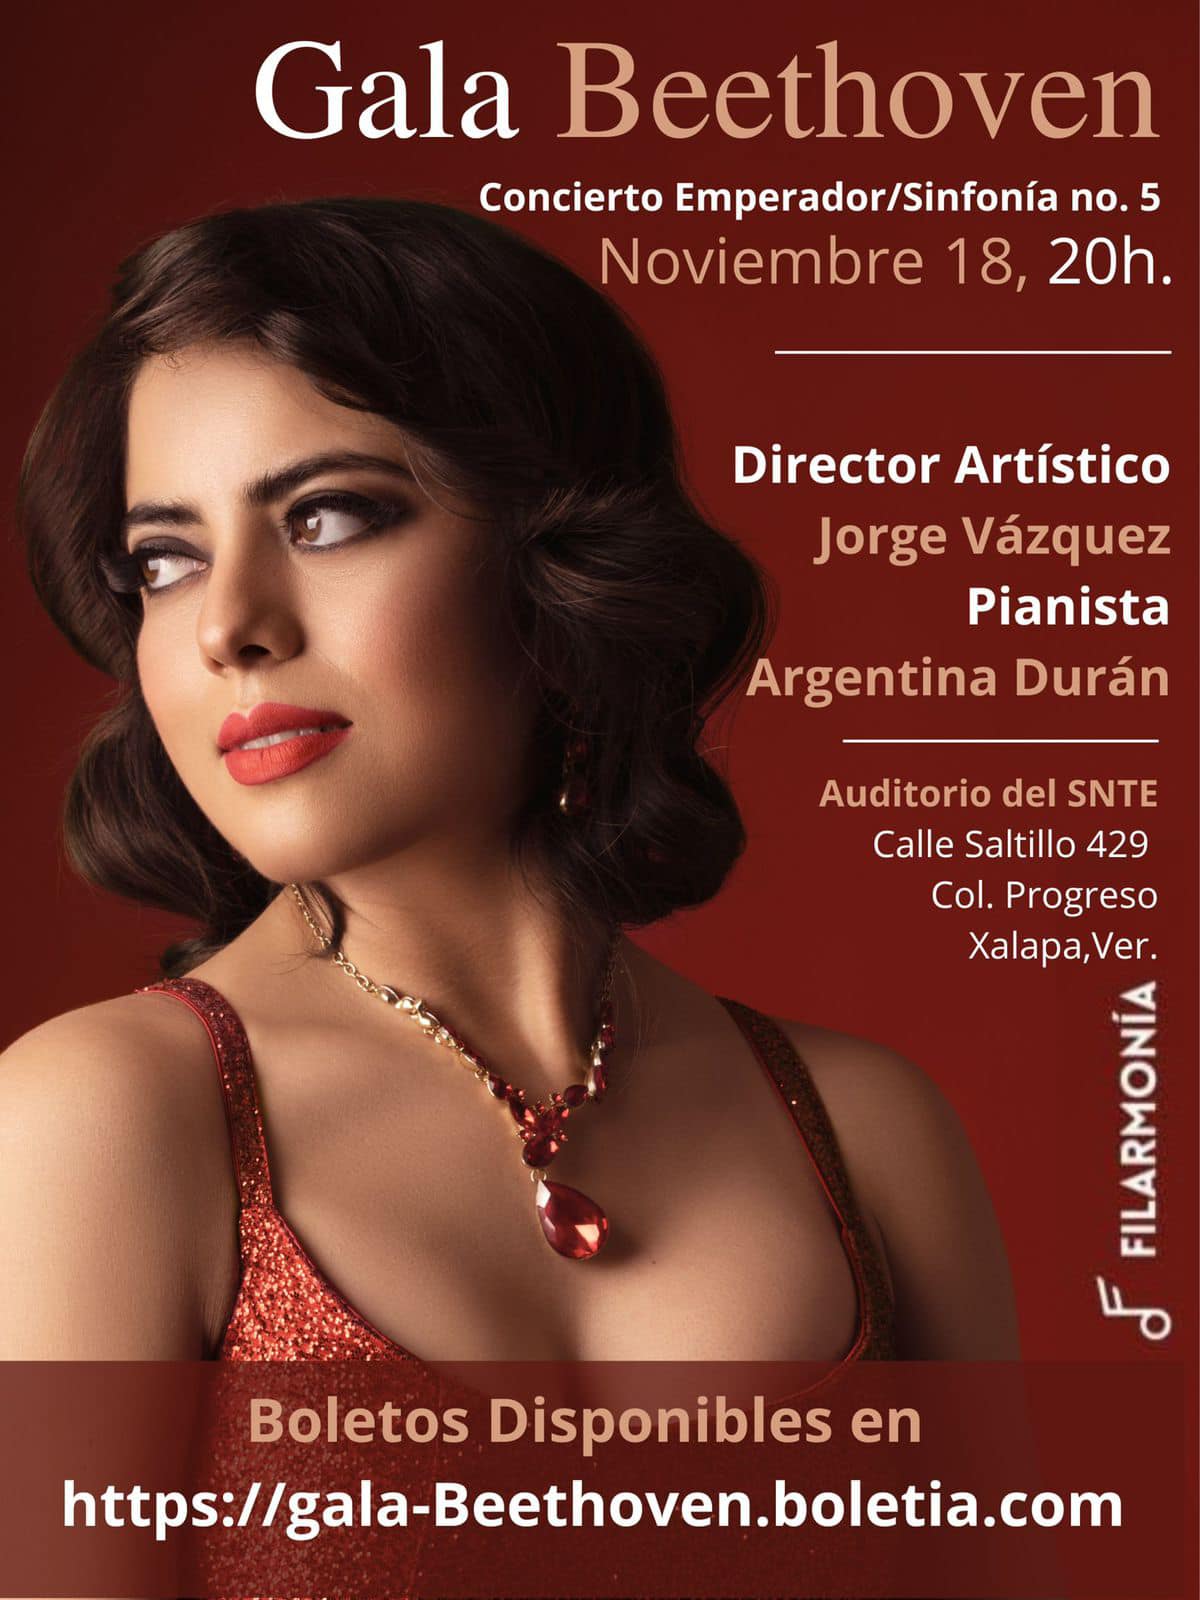 La pianista xalapeña, Argentina Durán, se presentará en auditorio del SNTE